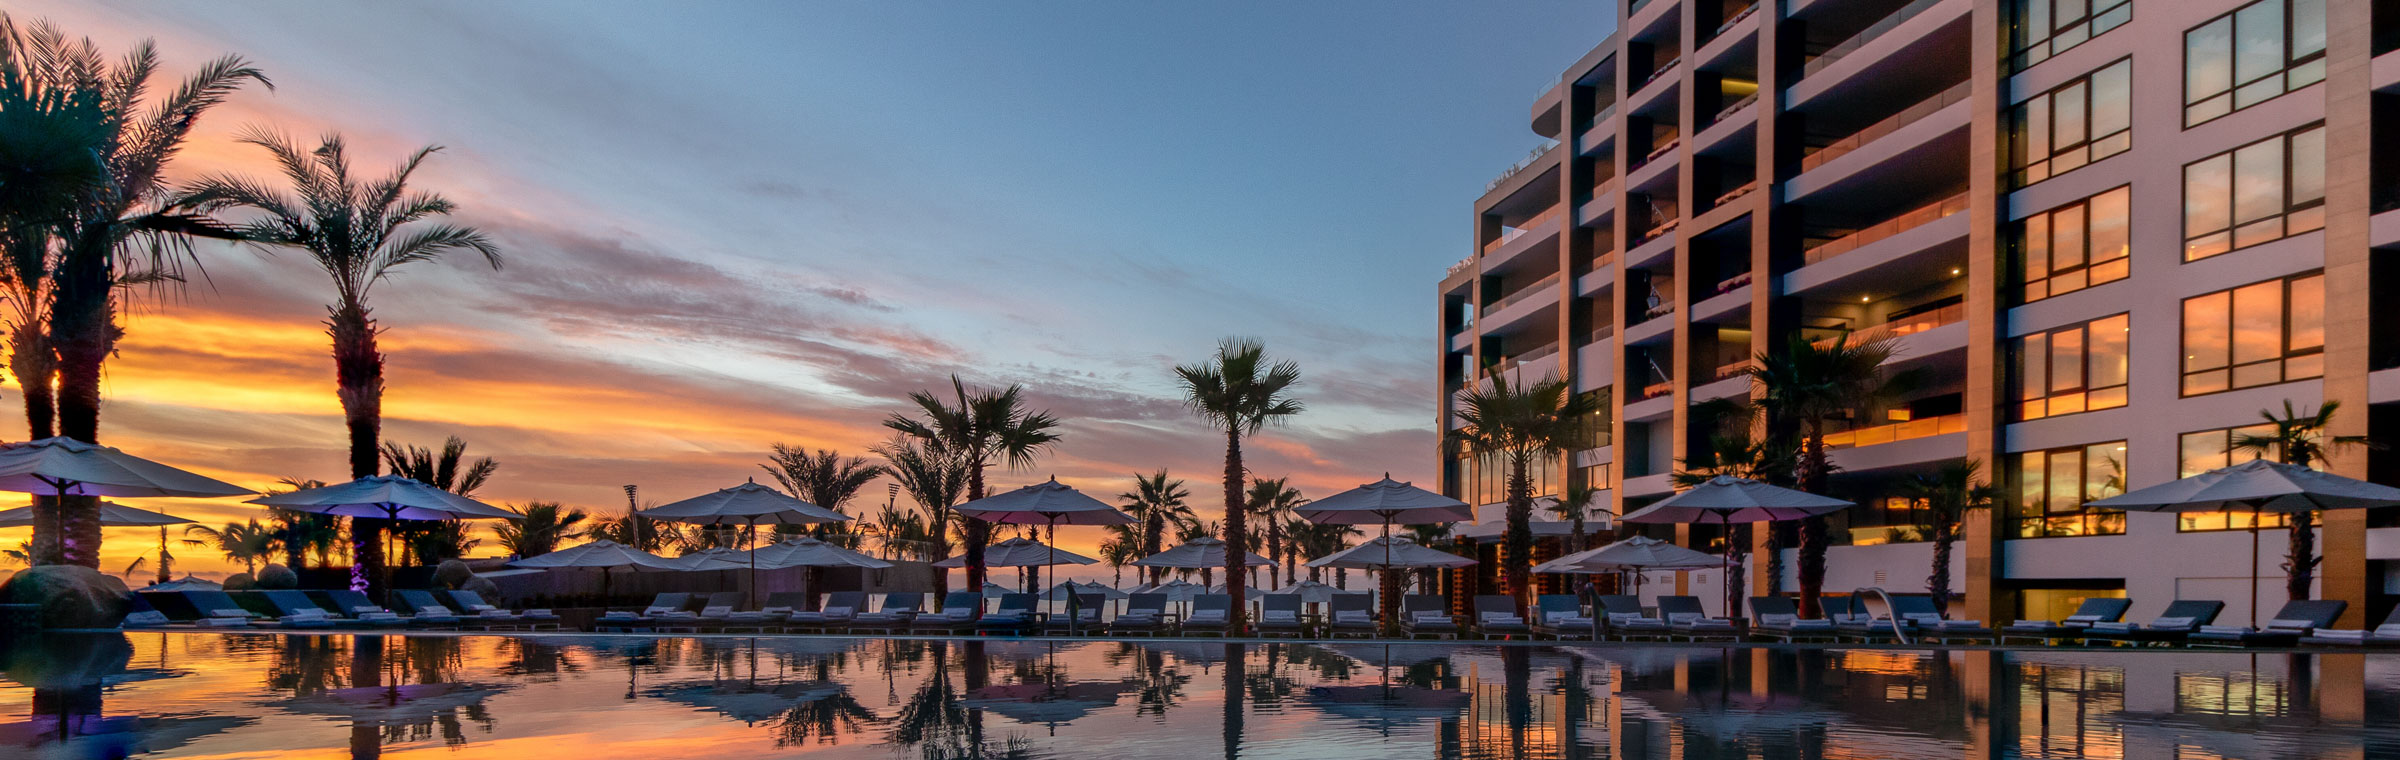 Garza Blanca Resort & Spa Los Cabos Pool at Sunset